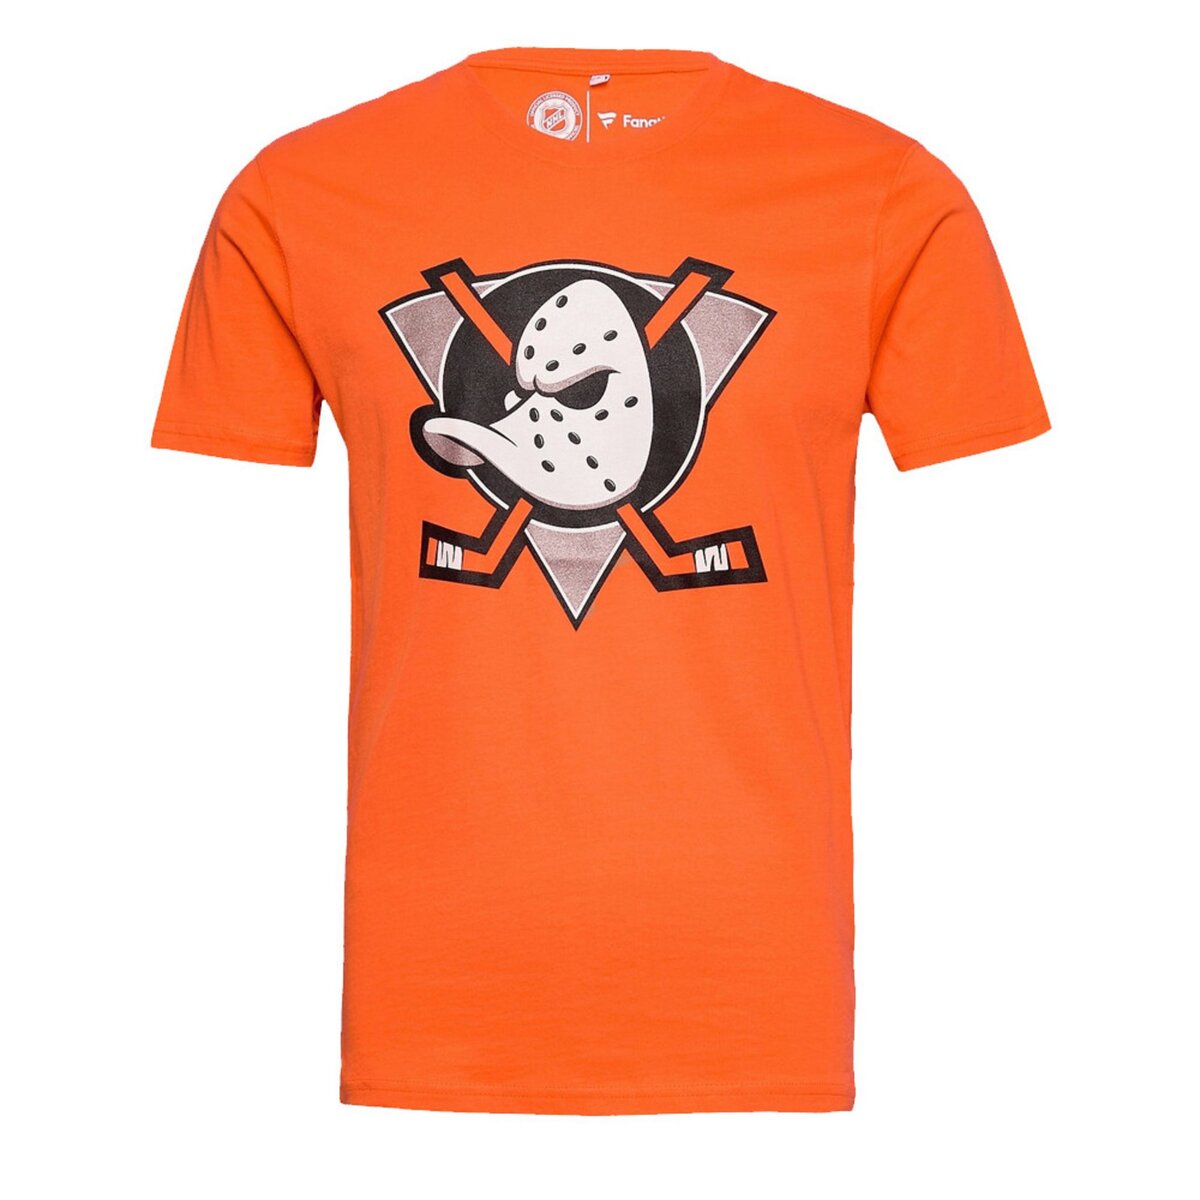  T-shirt orange Homme NHL Anaheim Ducks